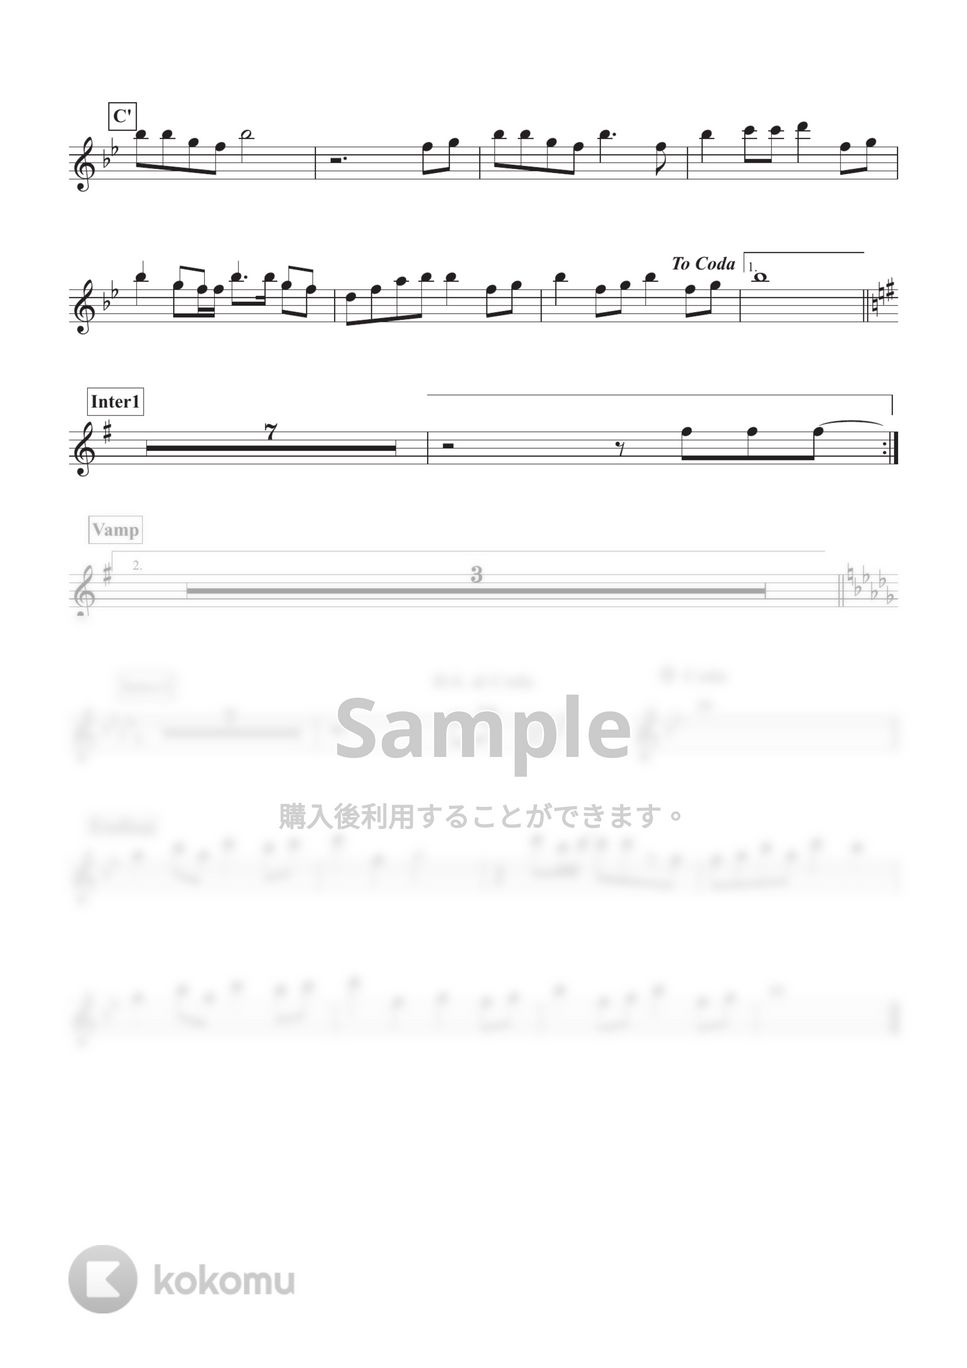 乃木坂46 - I see... (ソプラノサックス用 inB♭譜面) by ALT Music